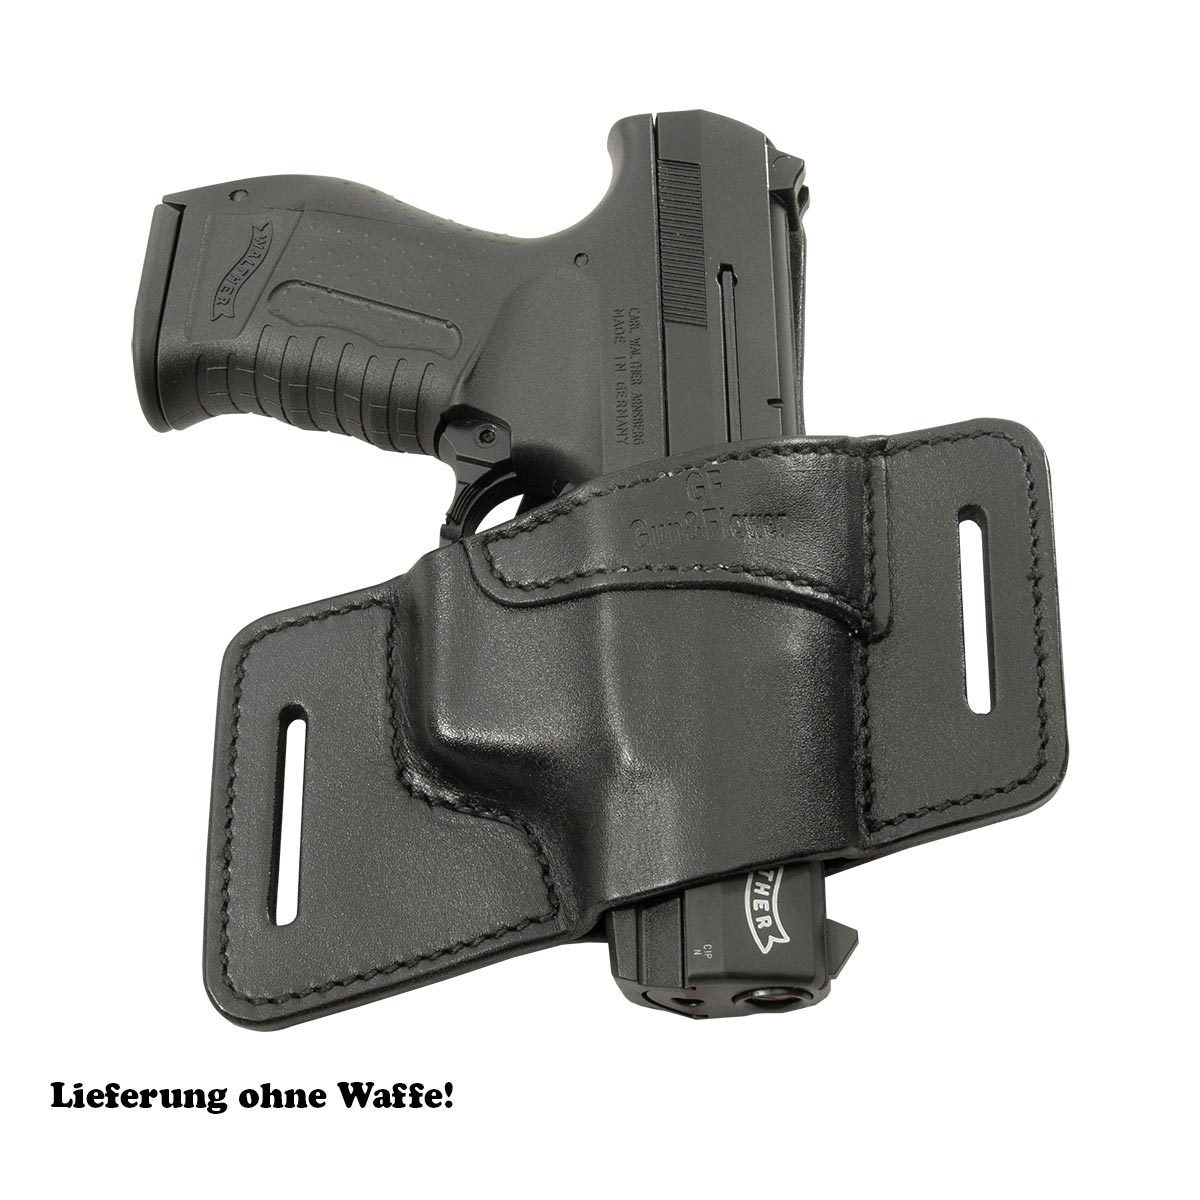 UX Leder Holster für Walther P88 schwarz Pistolen Gürtelholster VlaMiTex